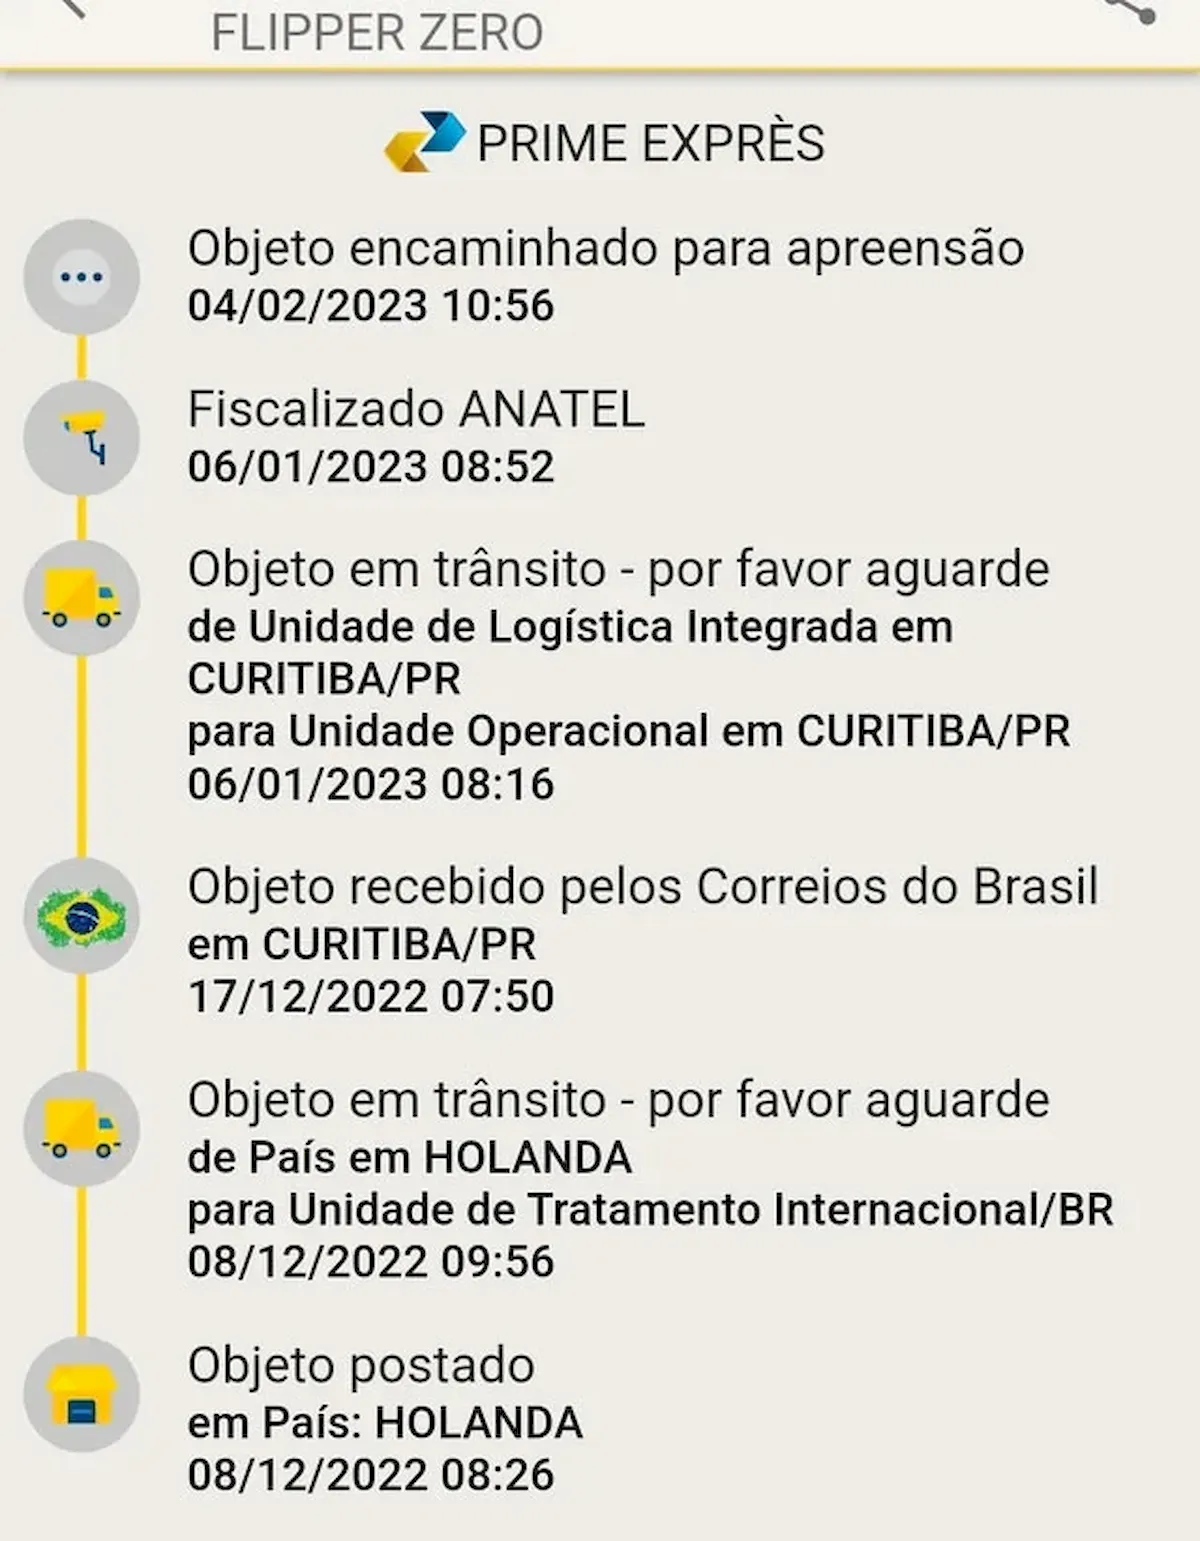 Remessas do Flipper Zero foram apreendidas no Brasil